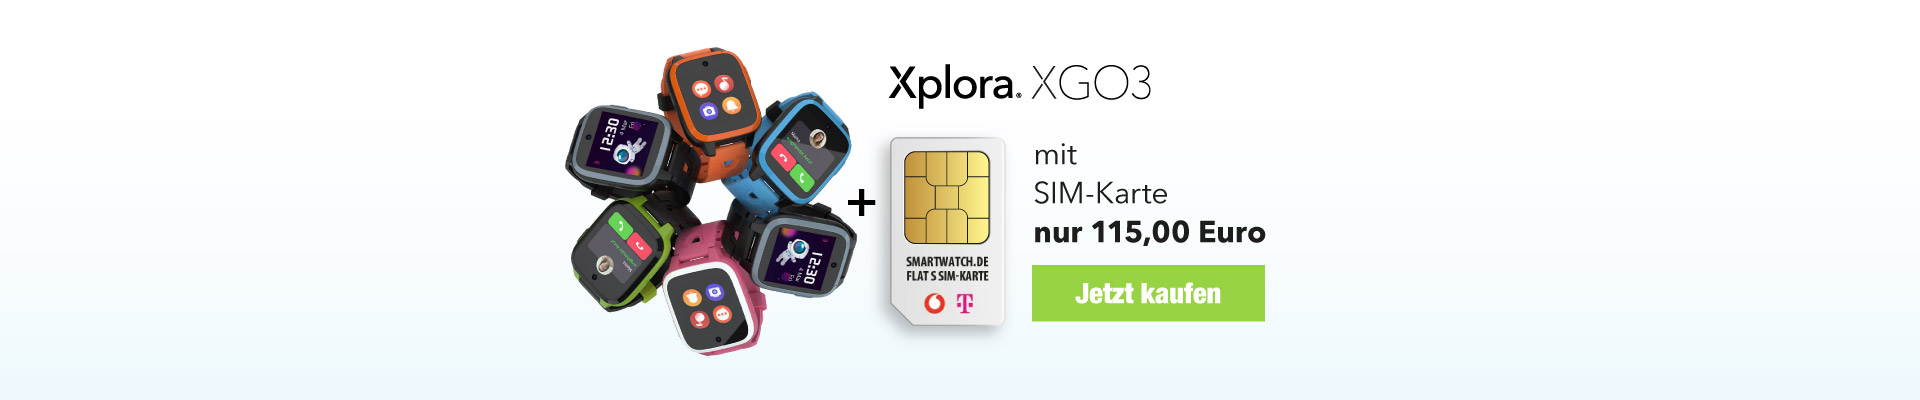 Xplora XGO3 mit Vertrag für 155 Euro kaufen